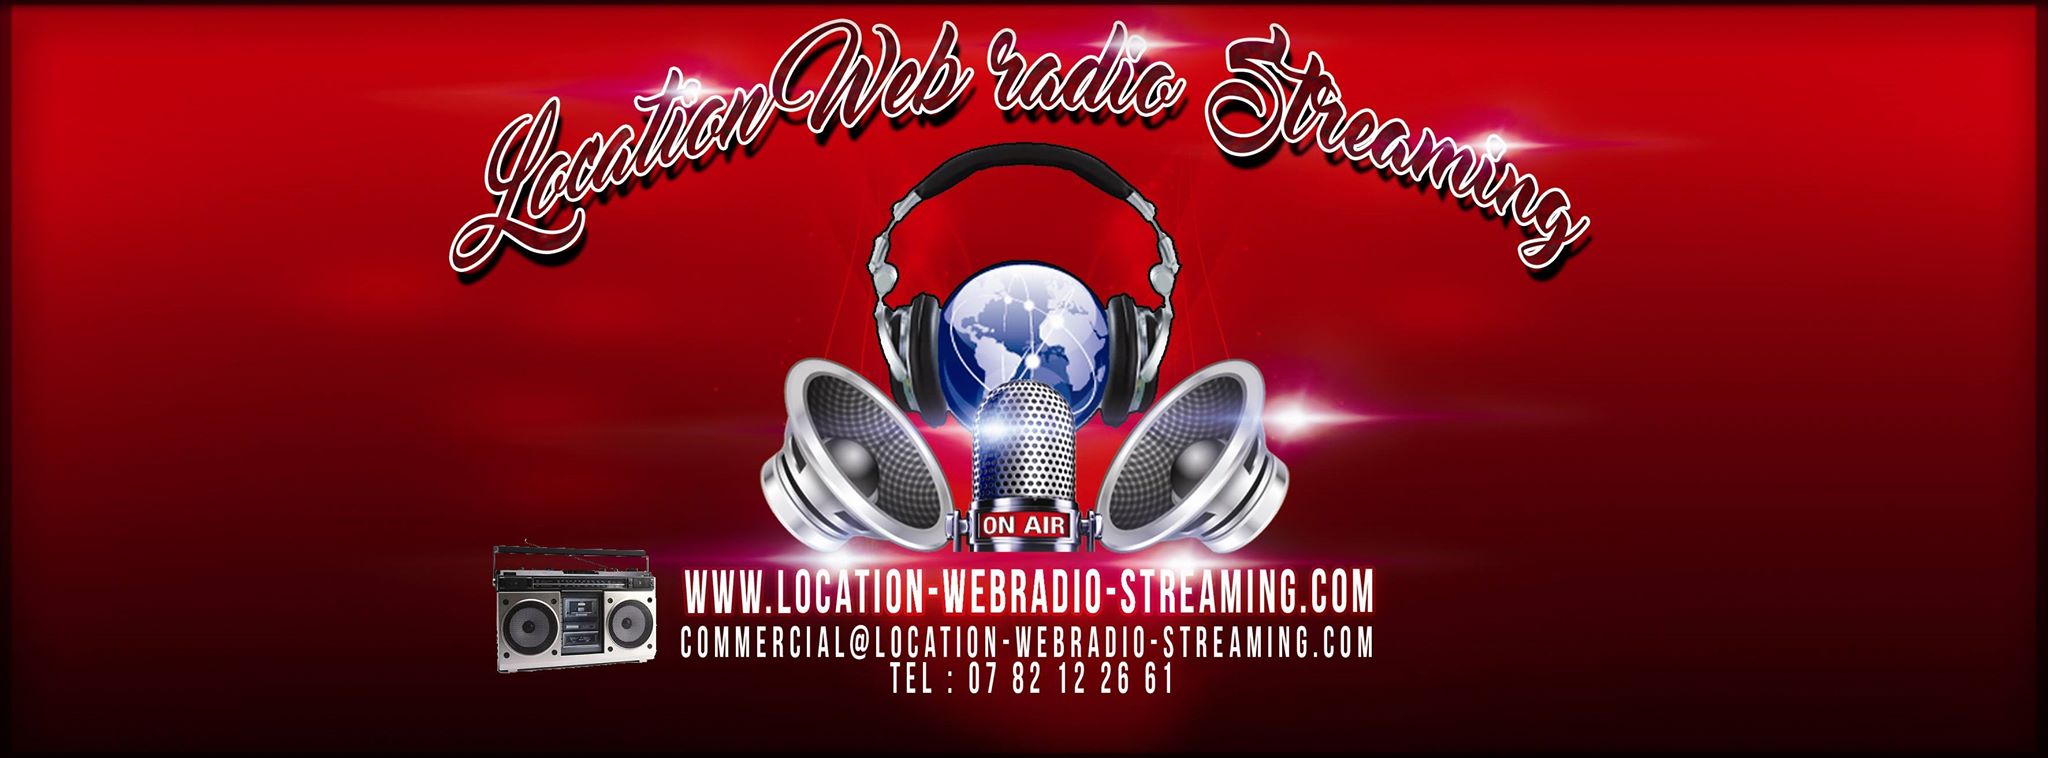 (c) Location-webradio-streaming.com